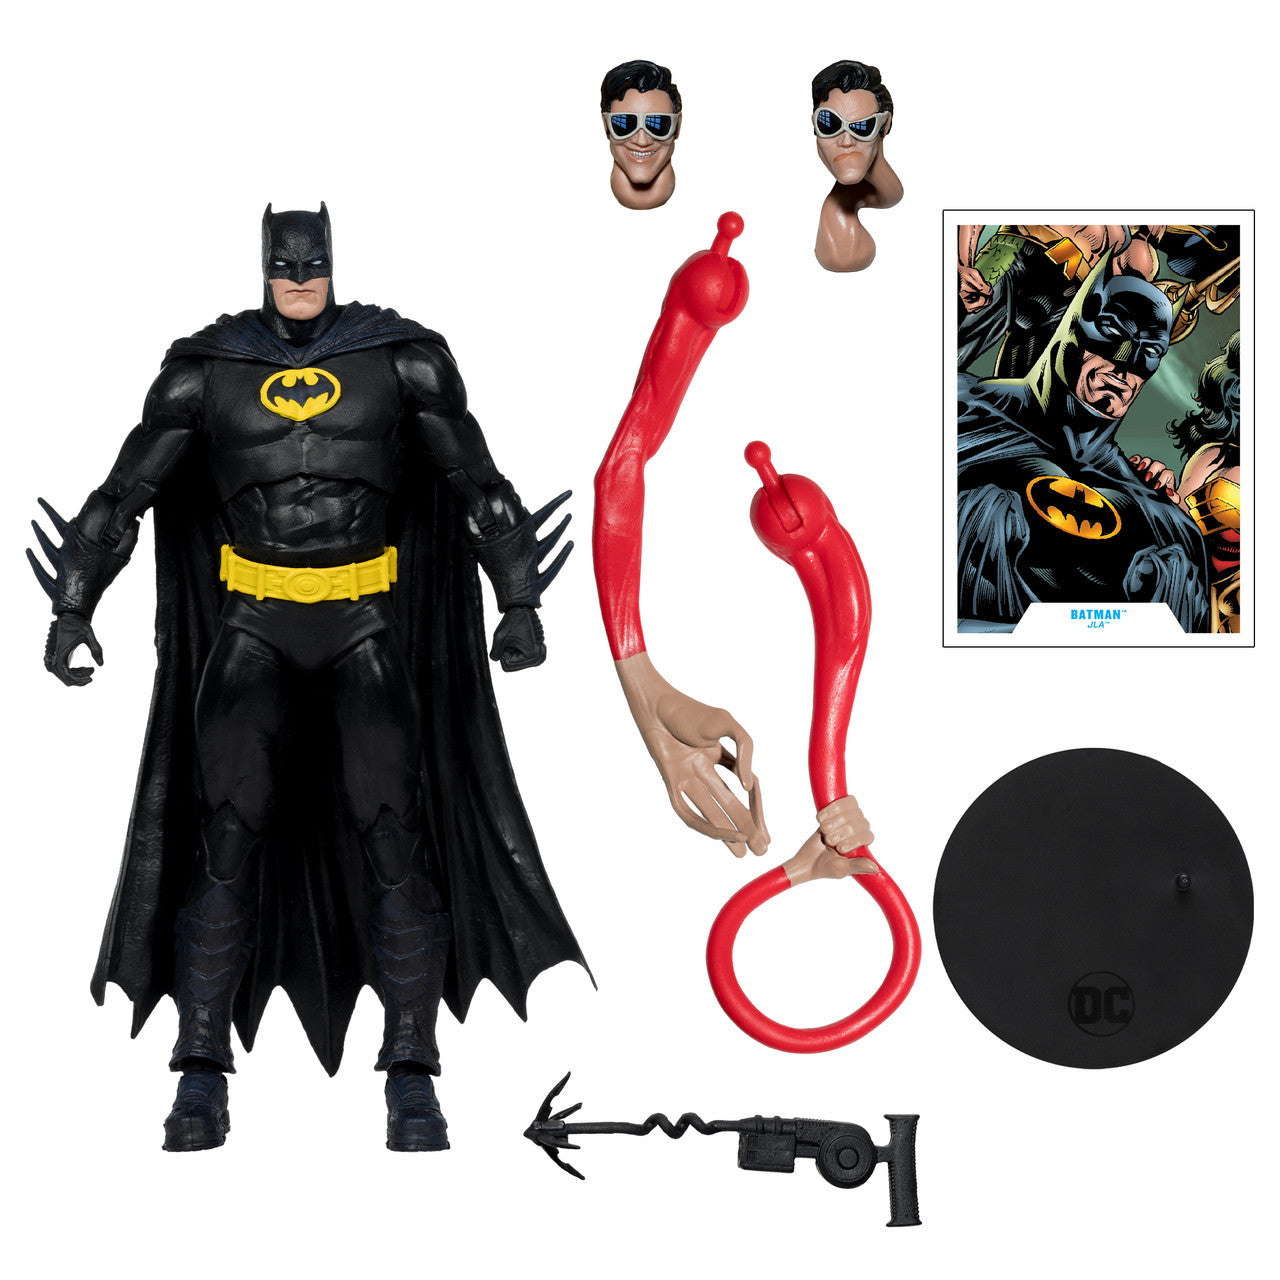 DC Multiverse Batman (JLA) Build-A-Figure